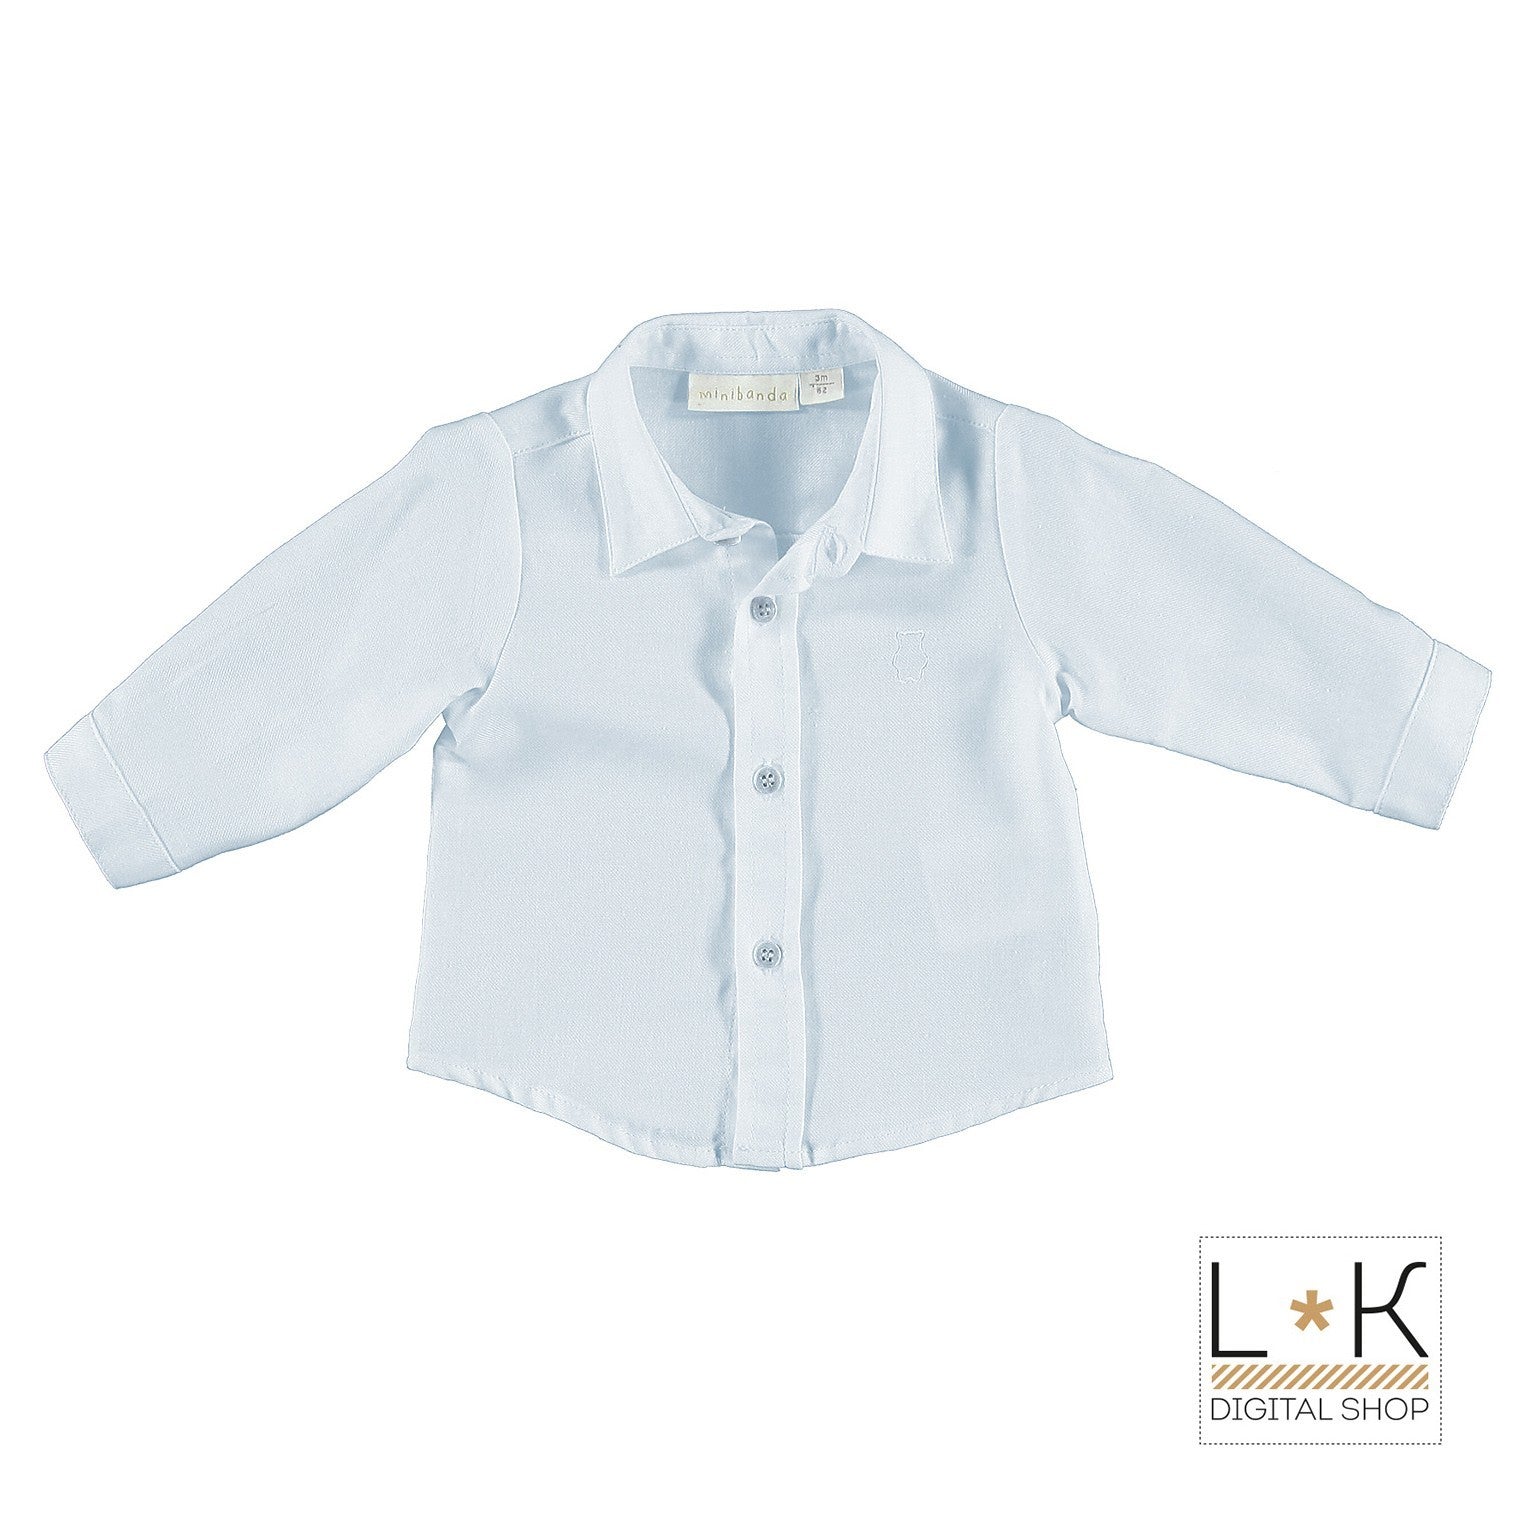 Camicia Elegante in Caldo Cotone Celeste Per Neonato Minibanda N608 - MINIBANDA - LuxuryKids